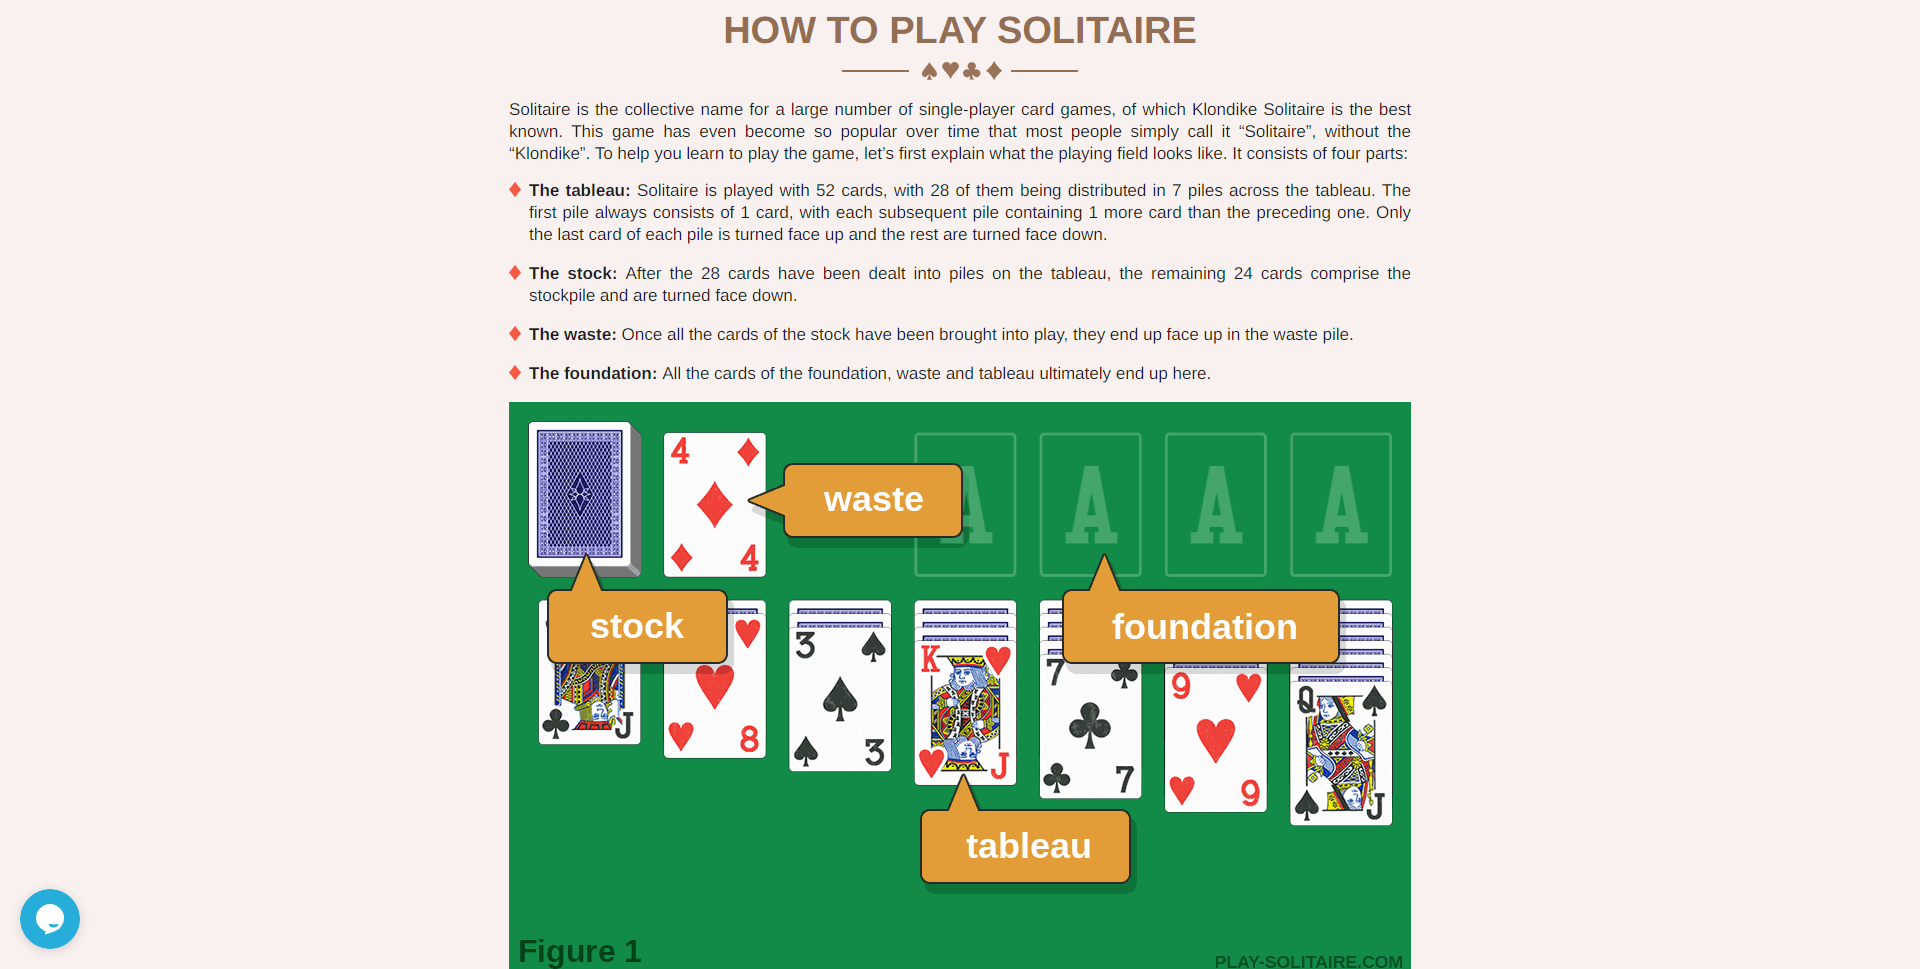 Spela Solitaire: Ditt favoritkortspel är nu online gratis